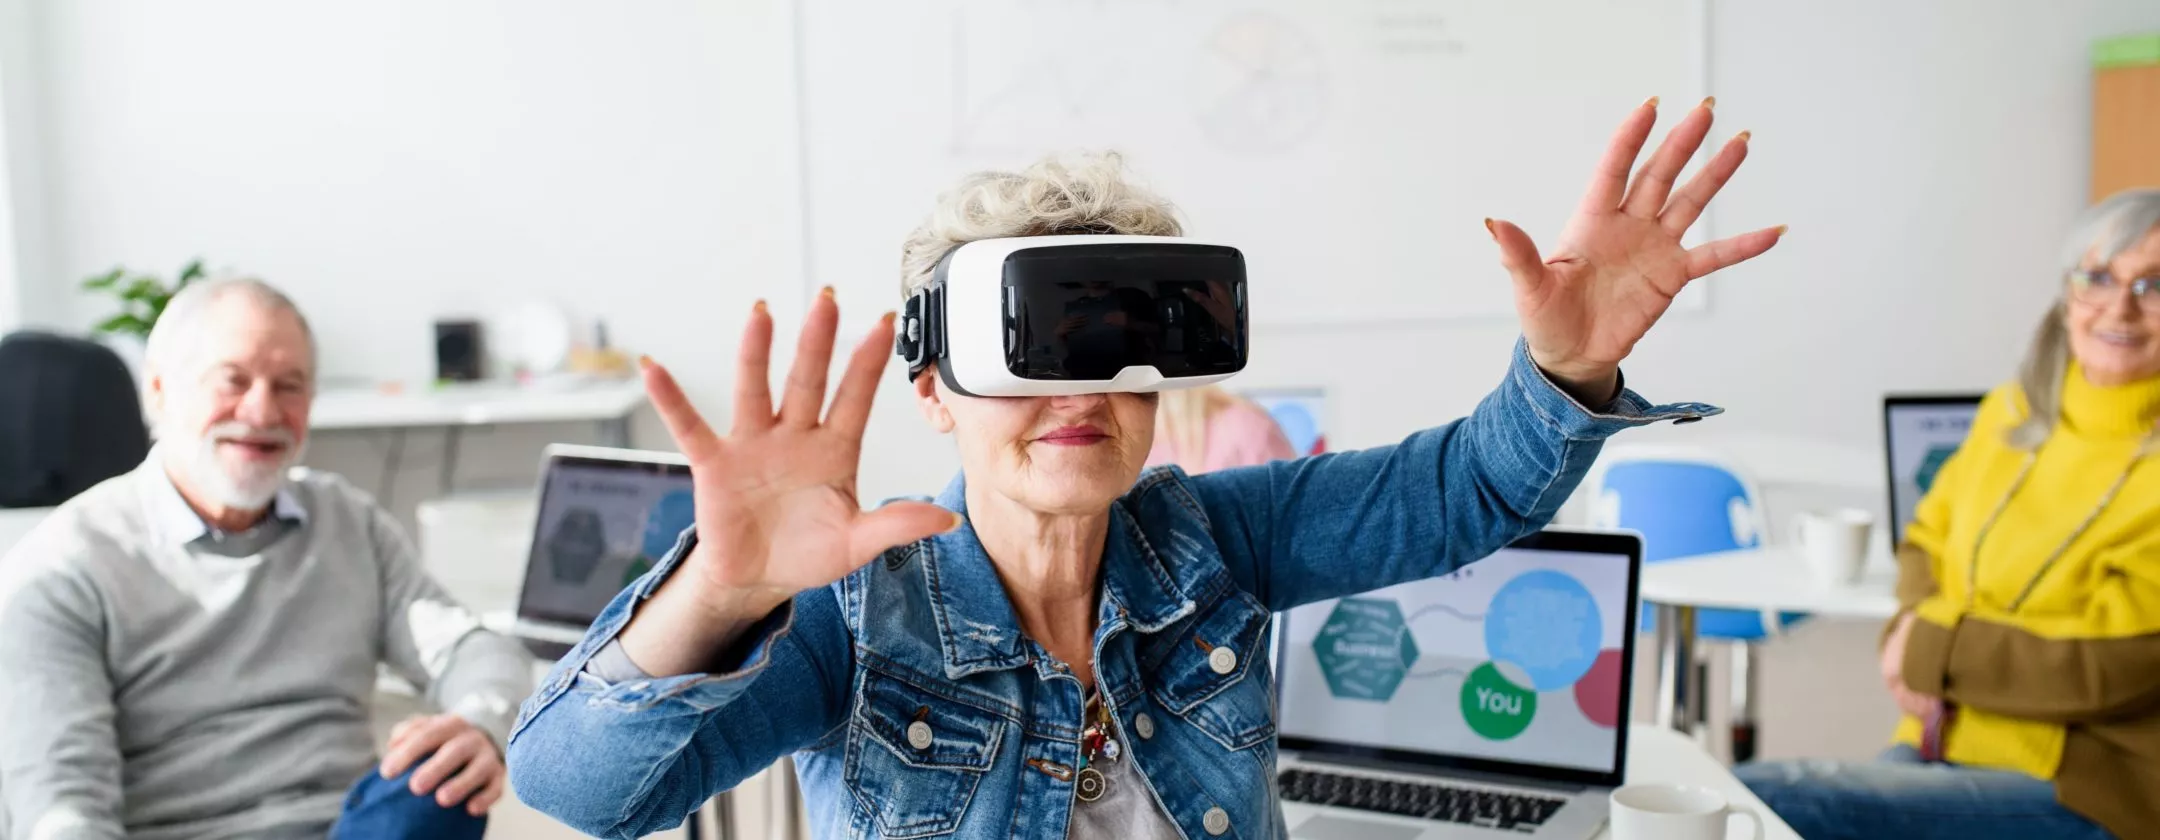 VR for Seniors using headset